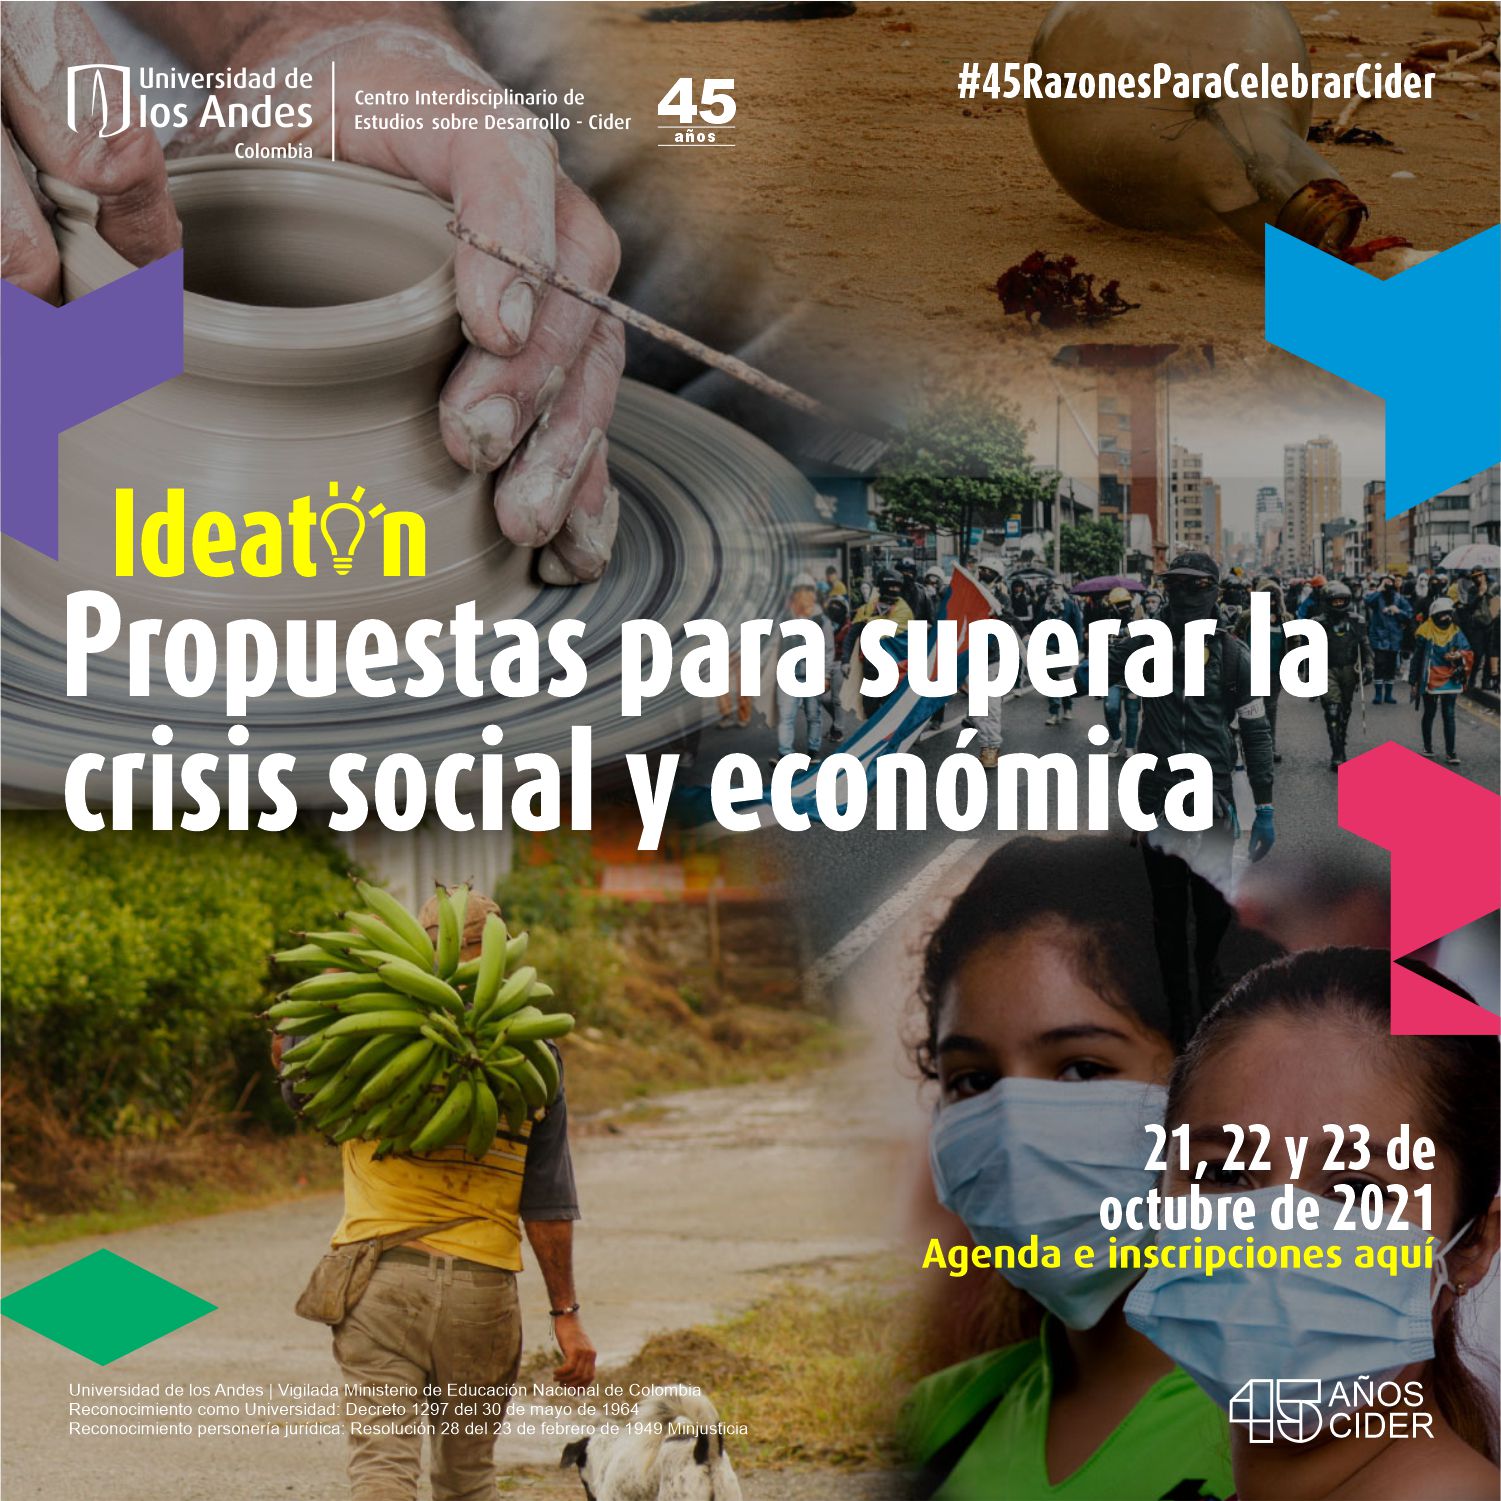 Celebración 45 años del Cider: Propuestas para superar la crisis social y económica Cider | Uniandes